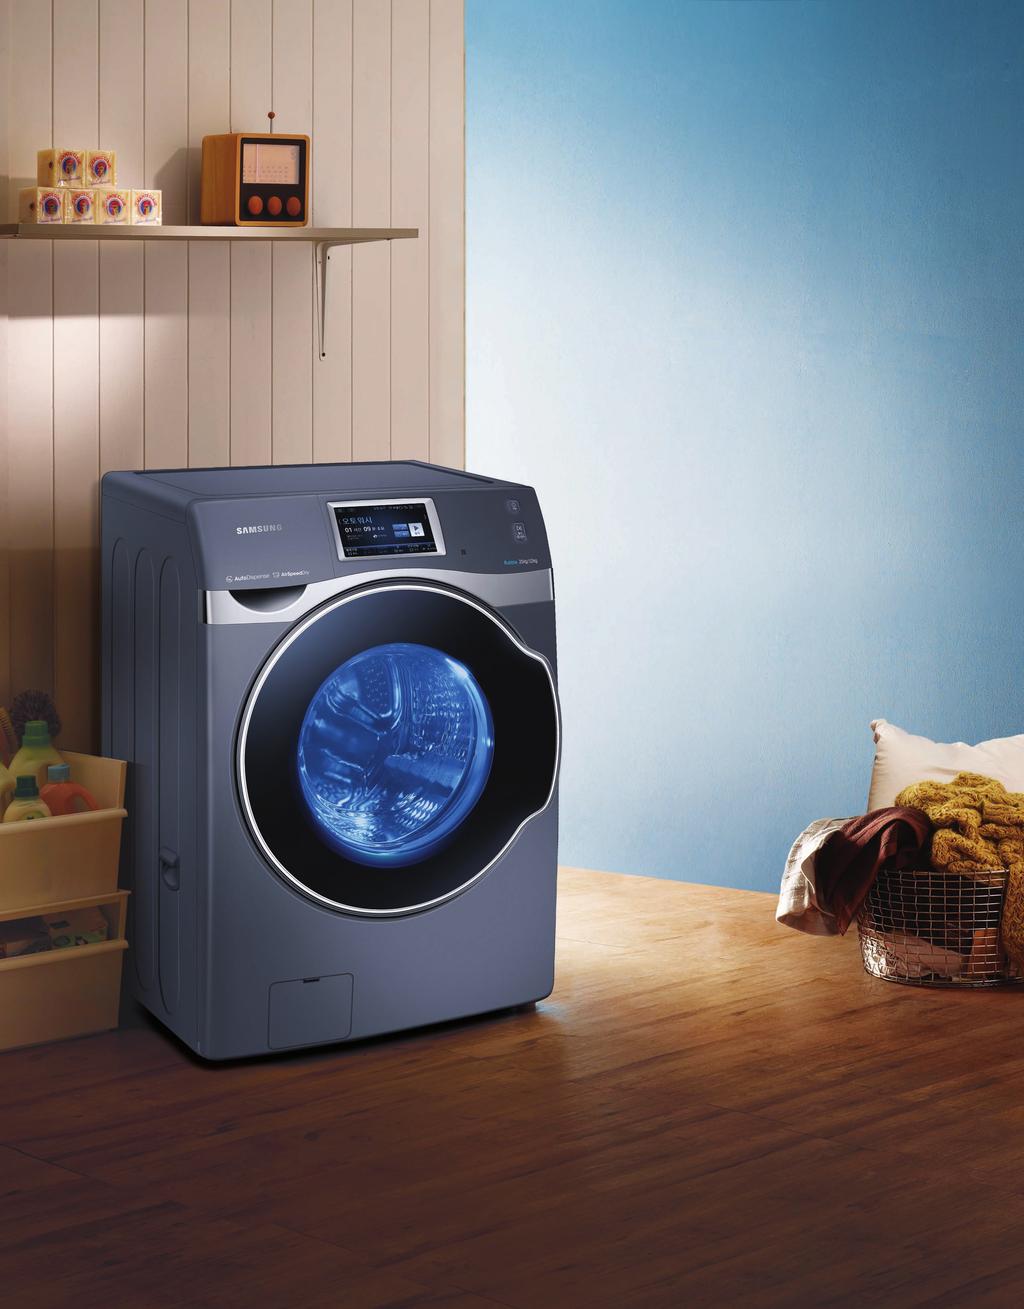 07 2015 NEW 삼성세탁기 프리미엄을완성하는크리스탈블루도어